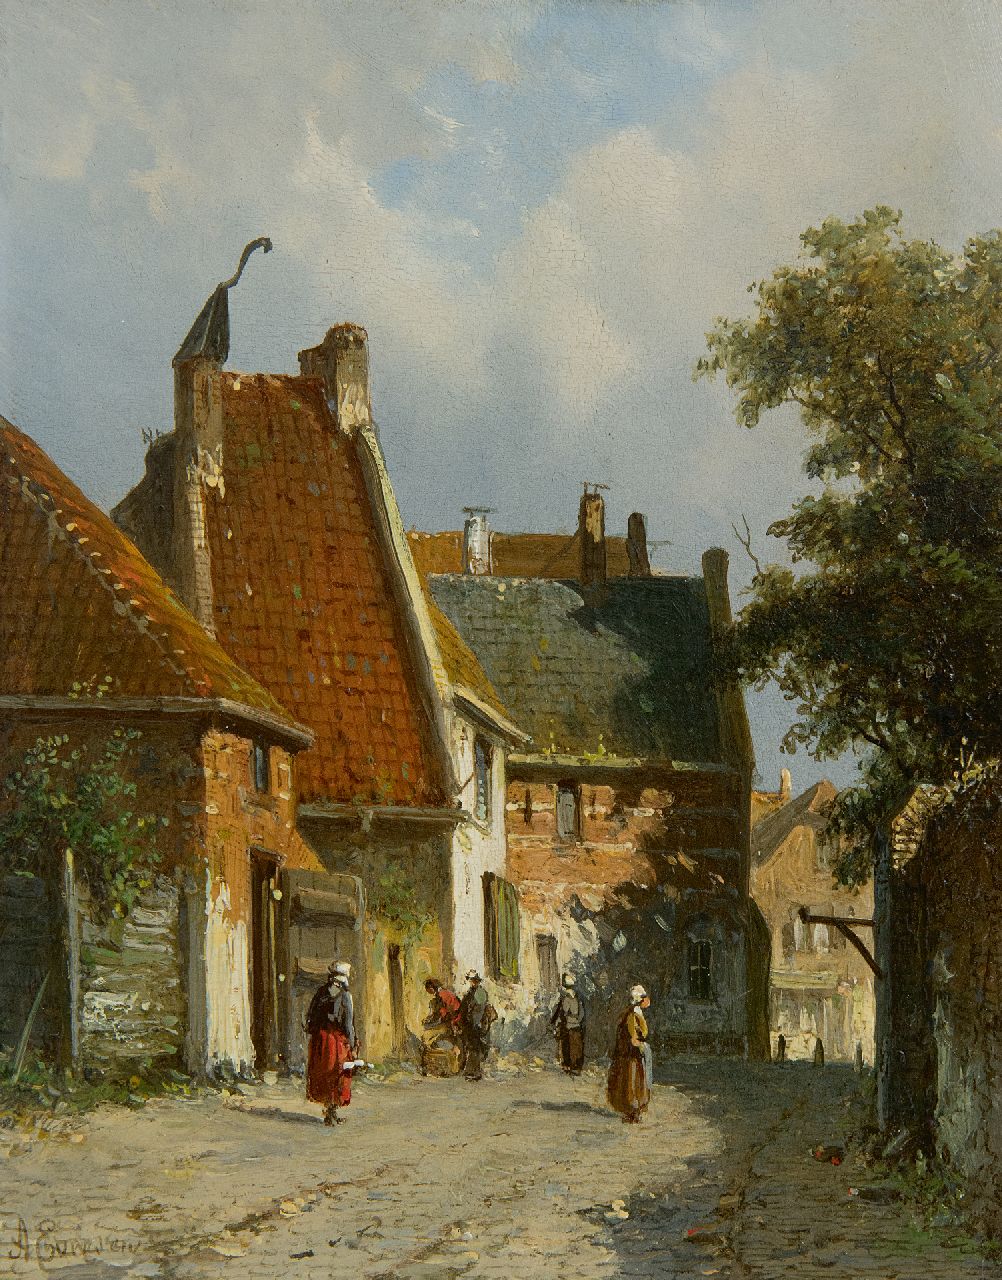 Eversen A.  | Adrianus Eversen | Schilderijen te koop aangeboden | Zonnig dorpsstraatje, olieverf op paneel 19,1 x 14,9 cm, gesigneerd linksonder